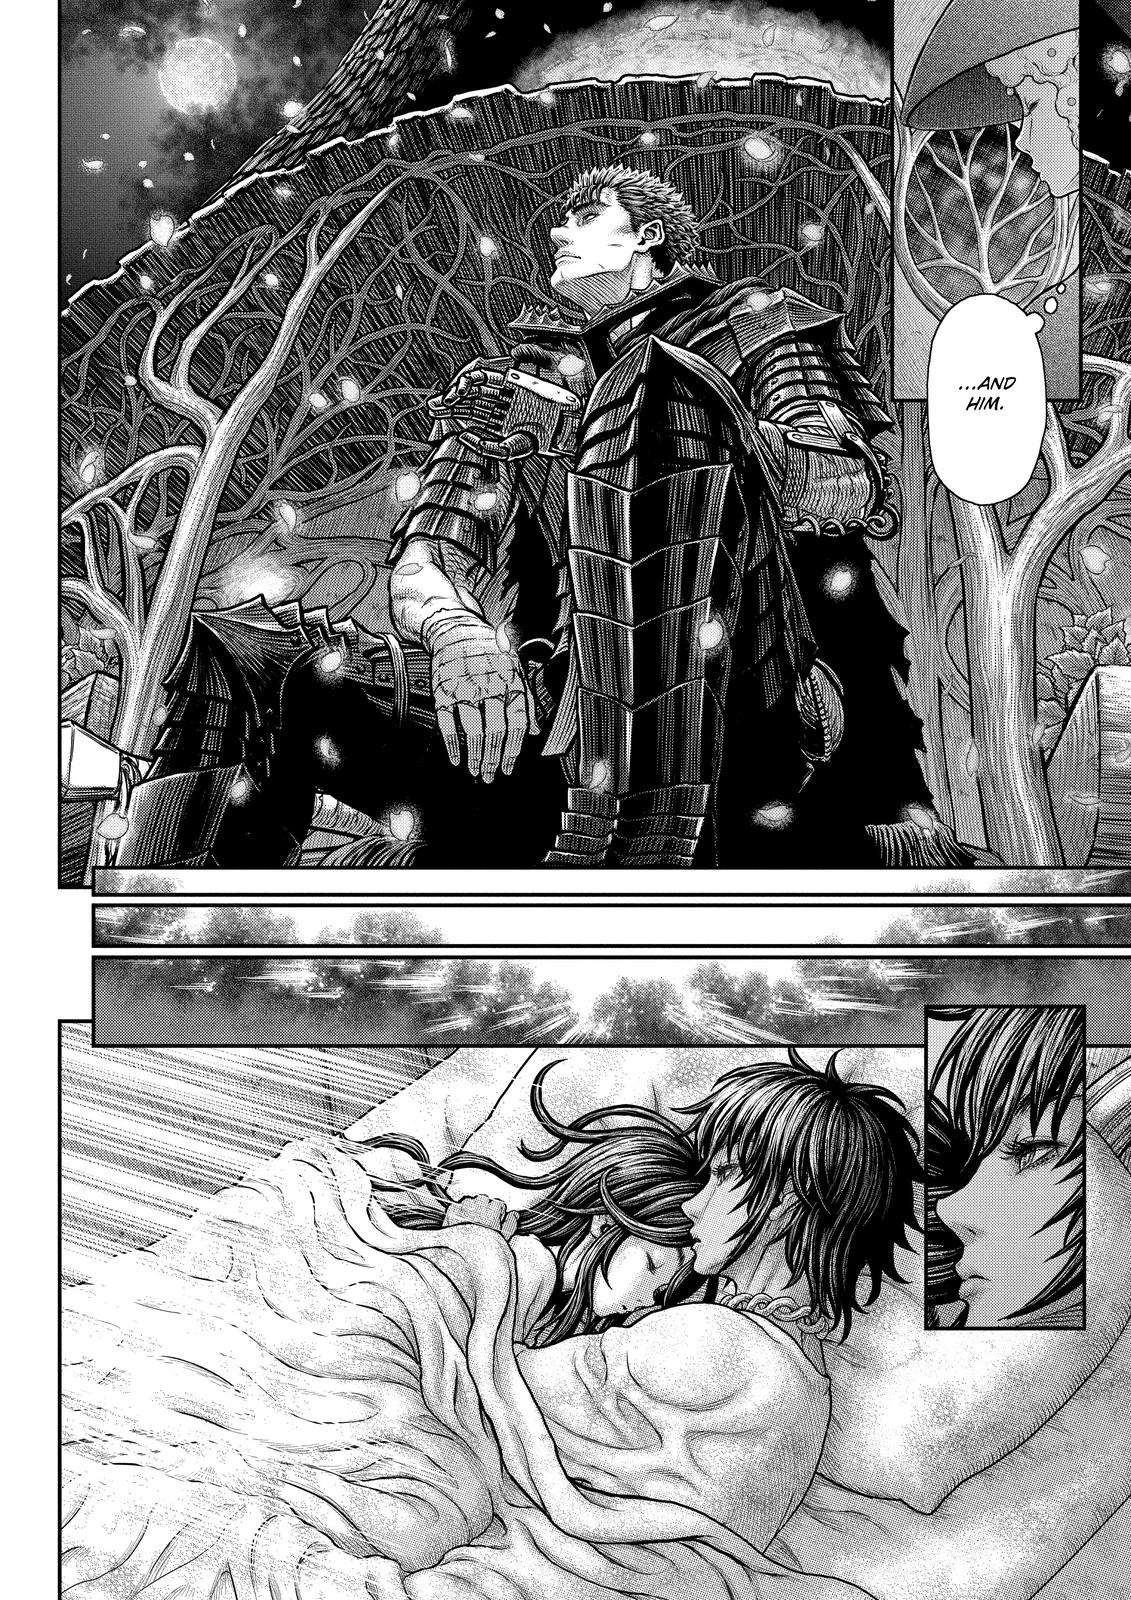 Berserk Manga Chapter 364 image 10